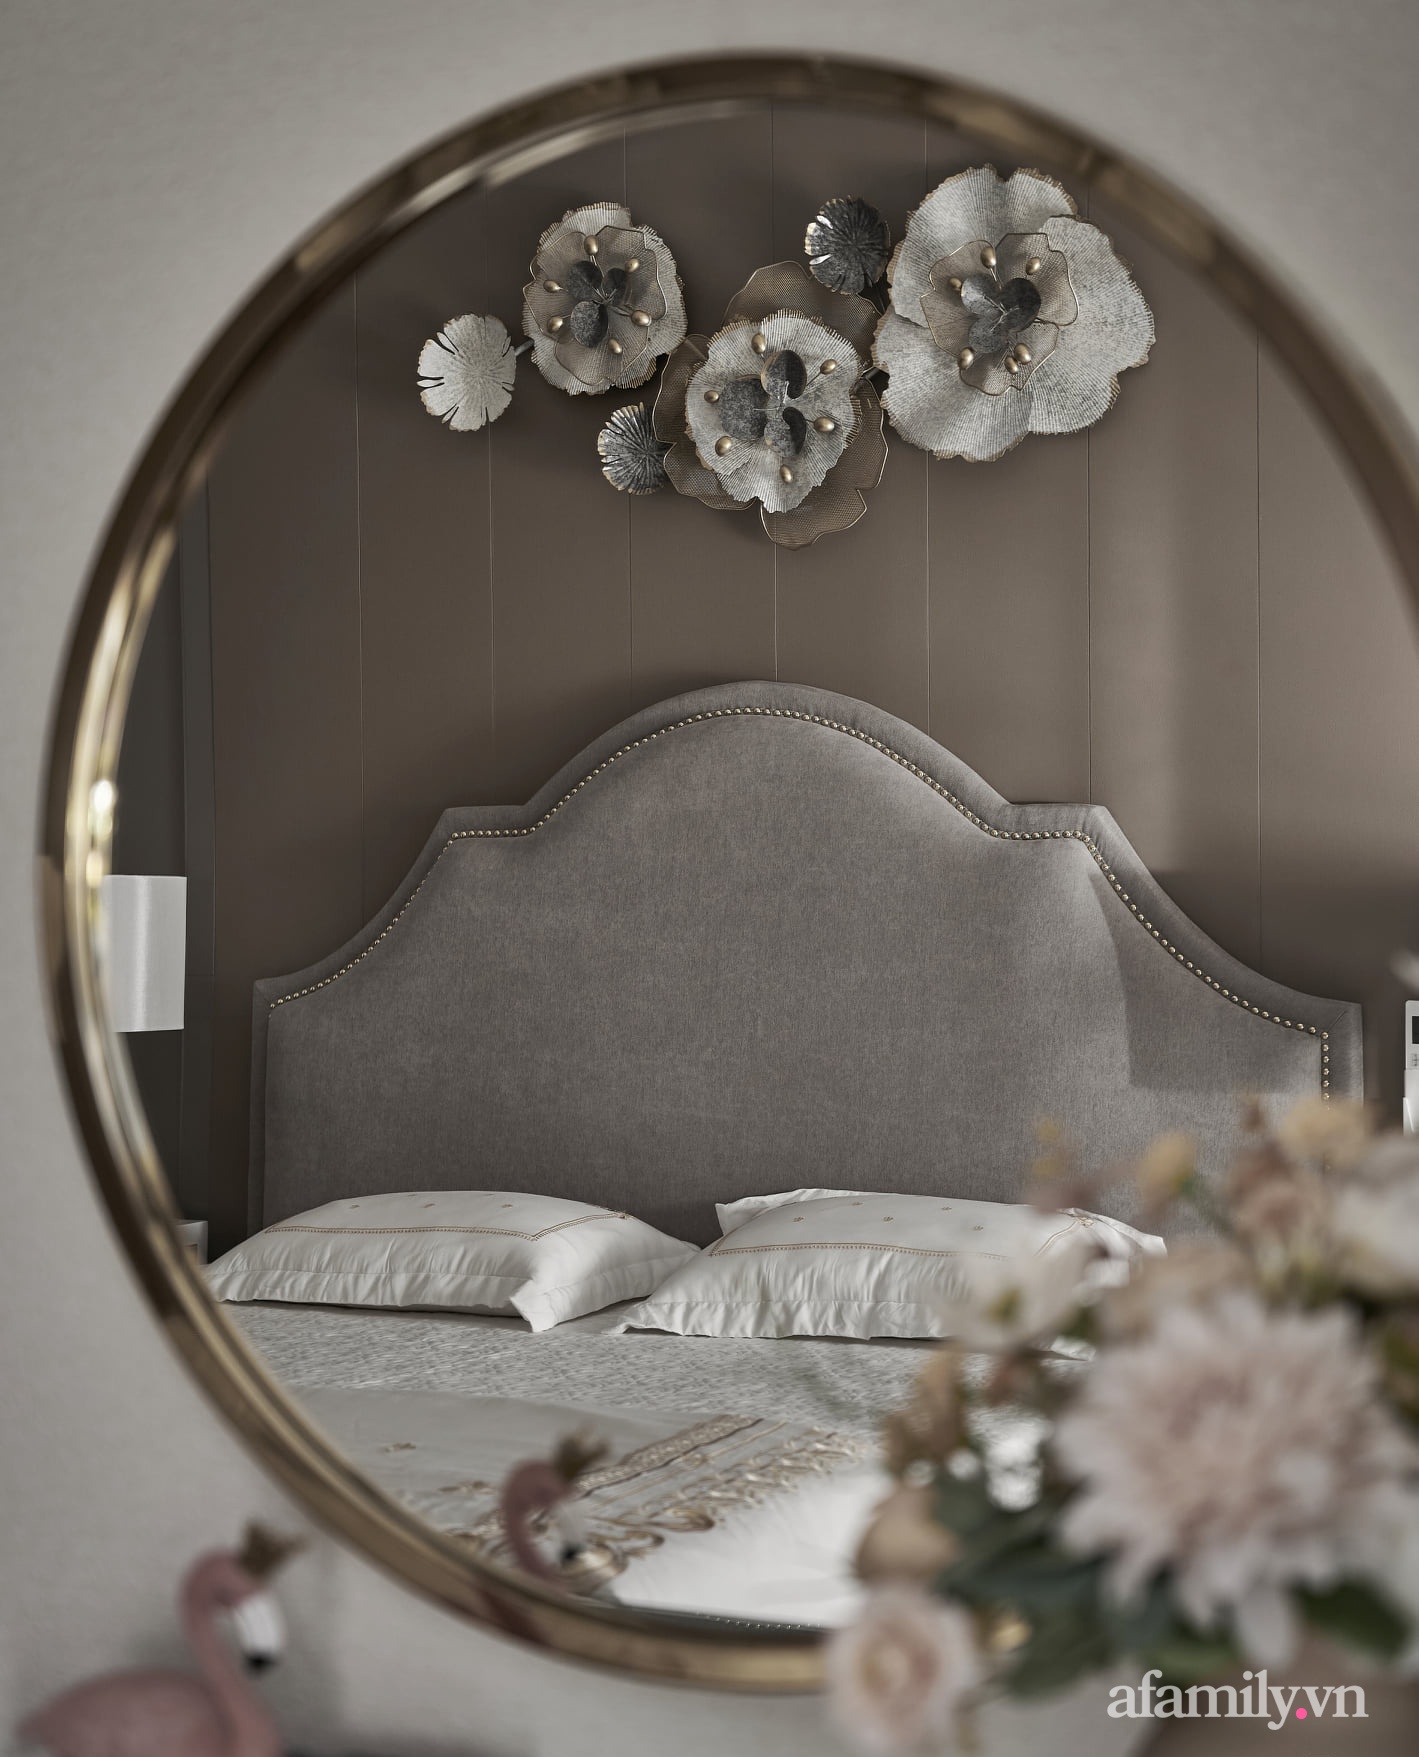  Chiếc gương nhỏ tăng thêm vẻ đẹp và sự tiện ích cho không gian nghỉ ngơi.